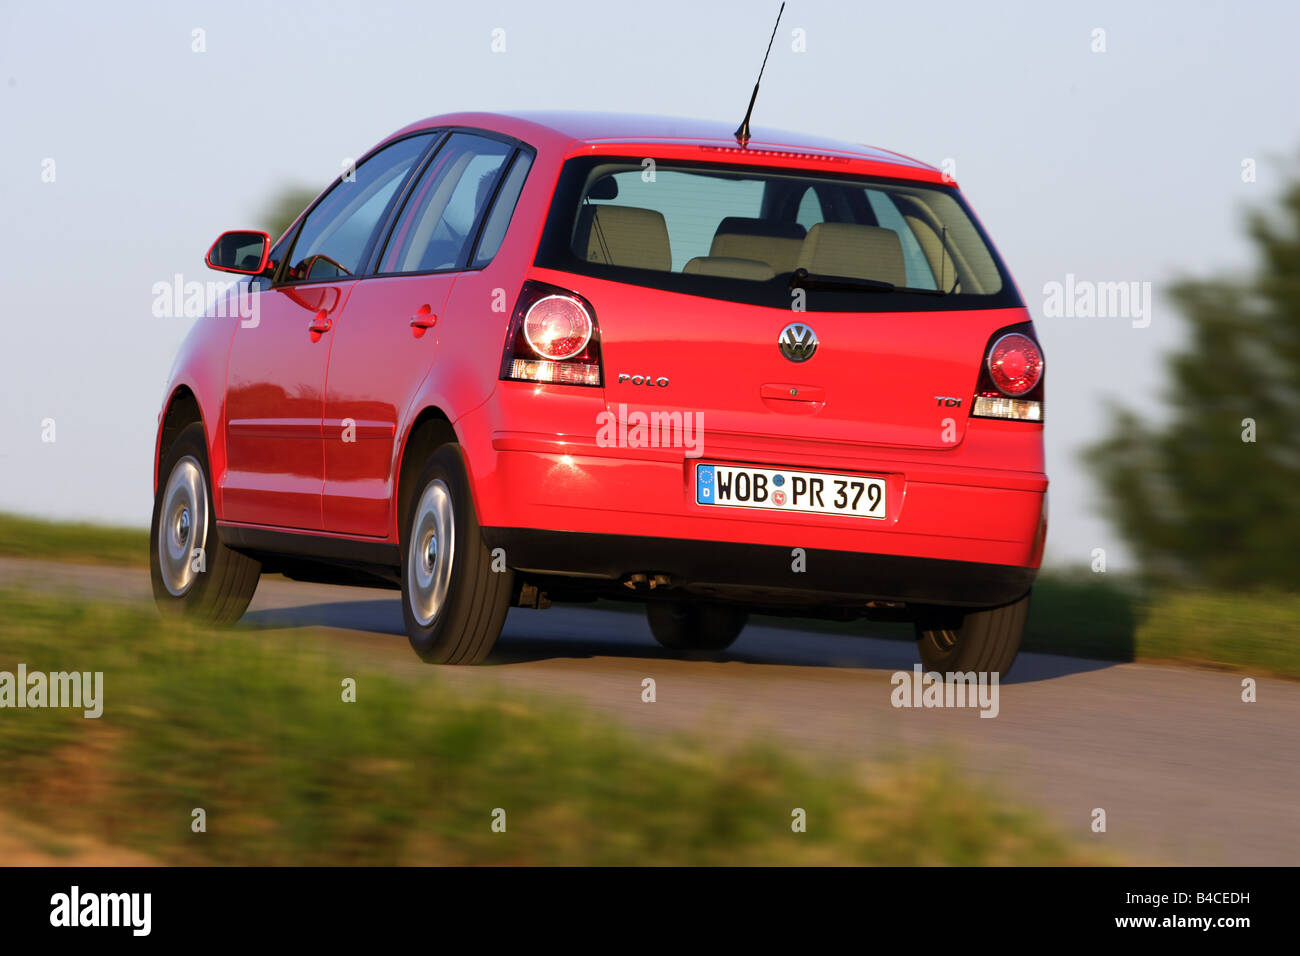 Auto VW Volkswagen Polo 1.4 TDI, modello anno 2005-, rosso, guida,  diagonale dal retro, vista posteriore, country road, fotografo Foto stock -  Alamy